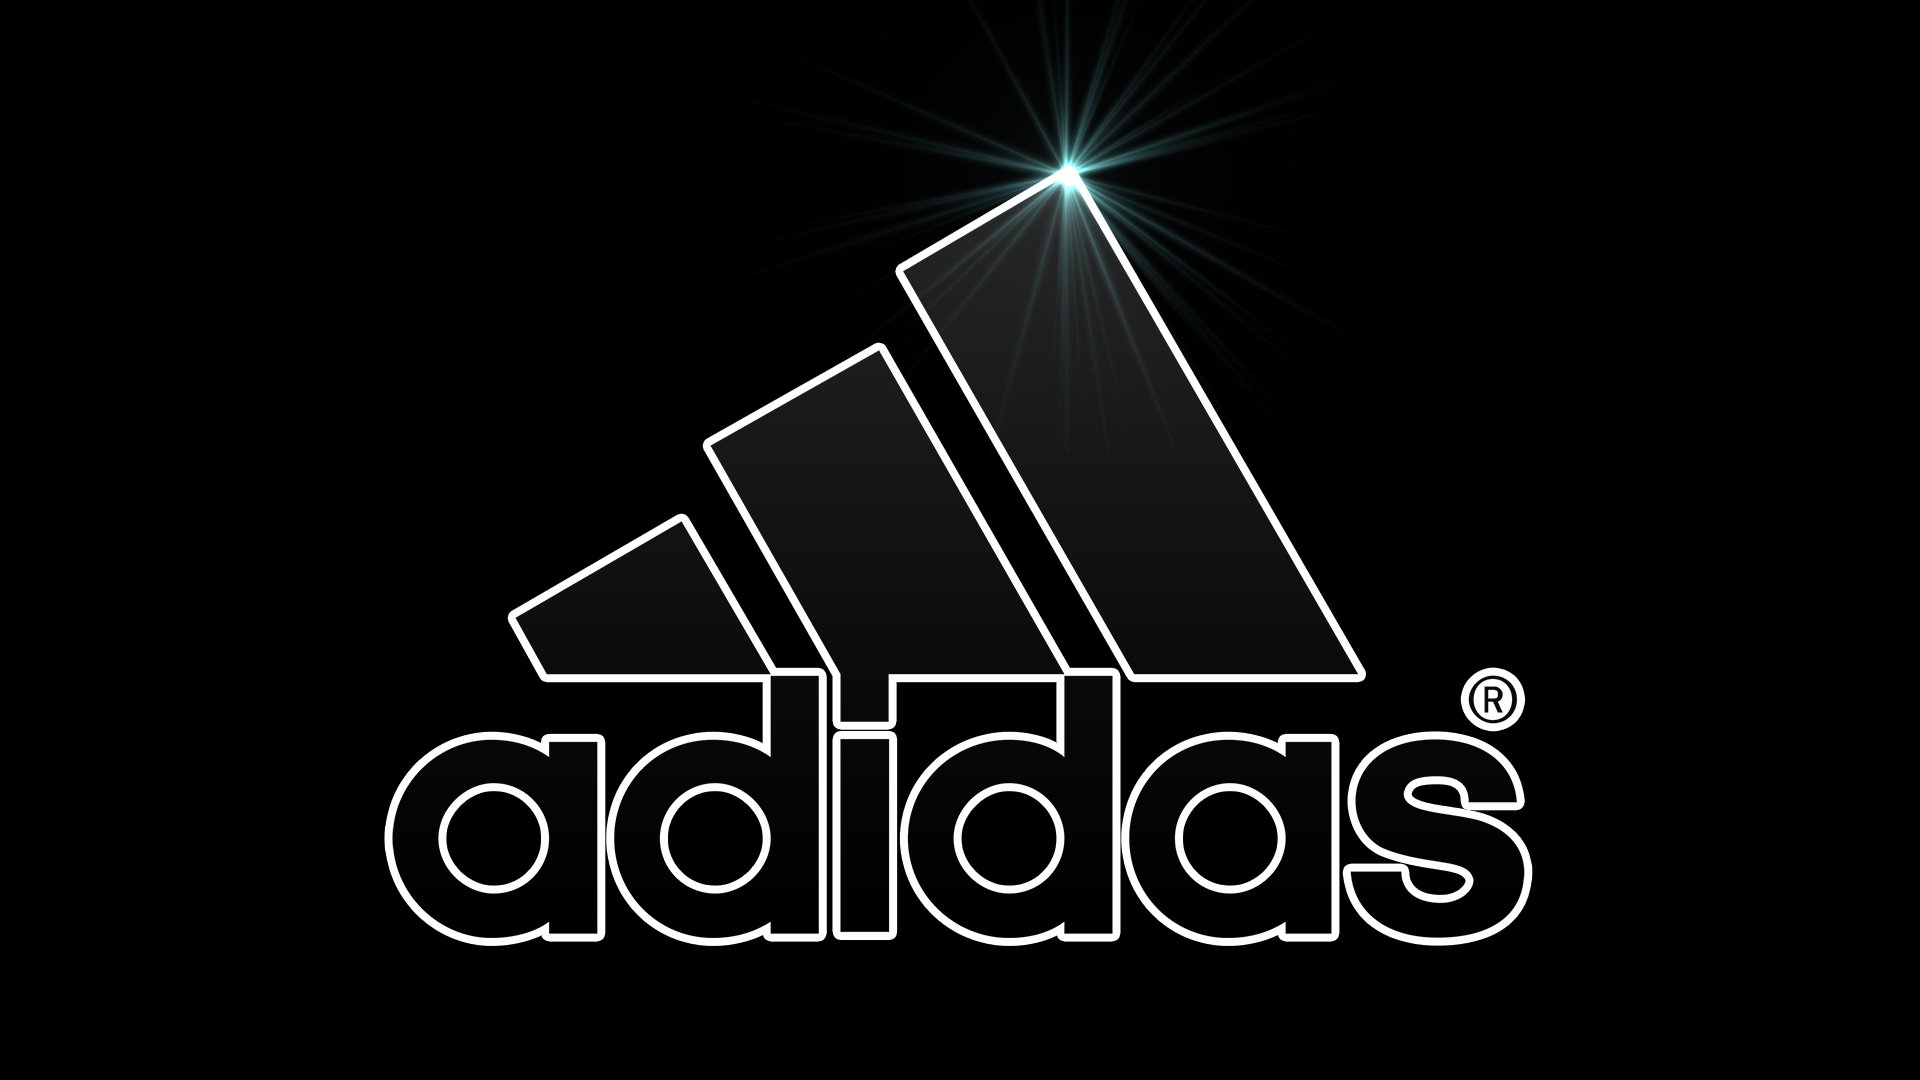 Logos De Nike Y Adidas Fondos De Pantalla Para Tu Cel - vrogue.co